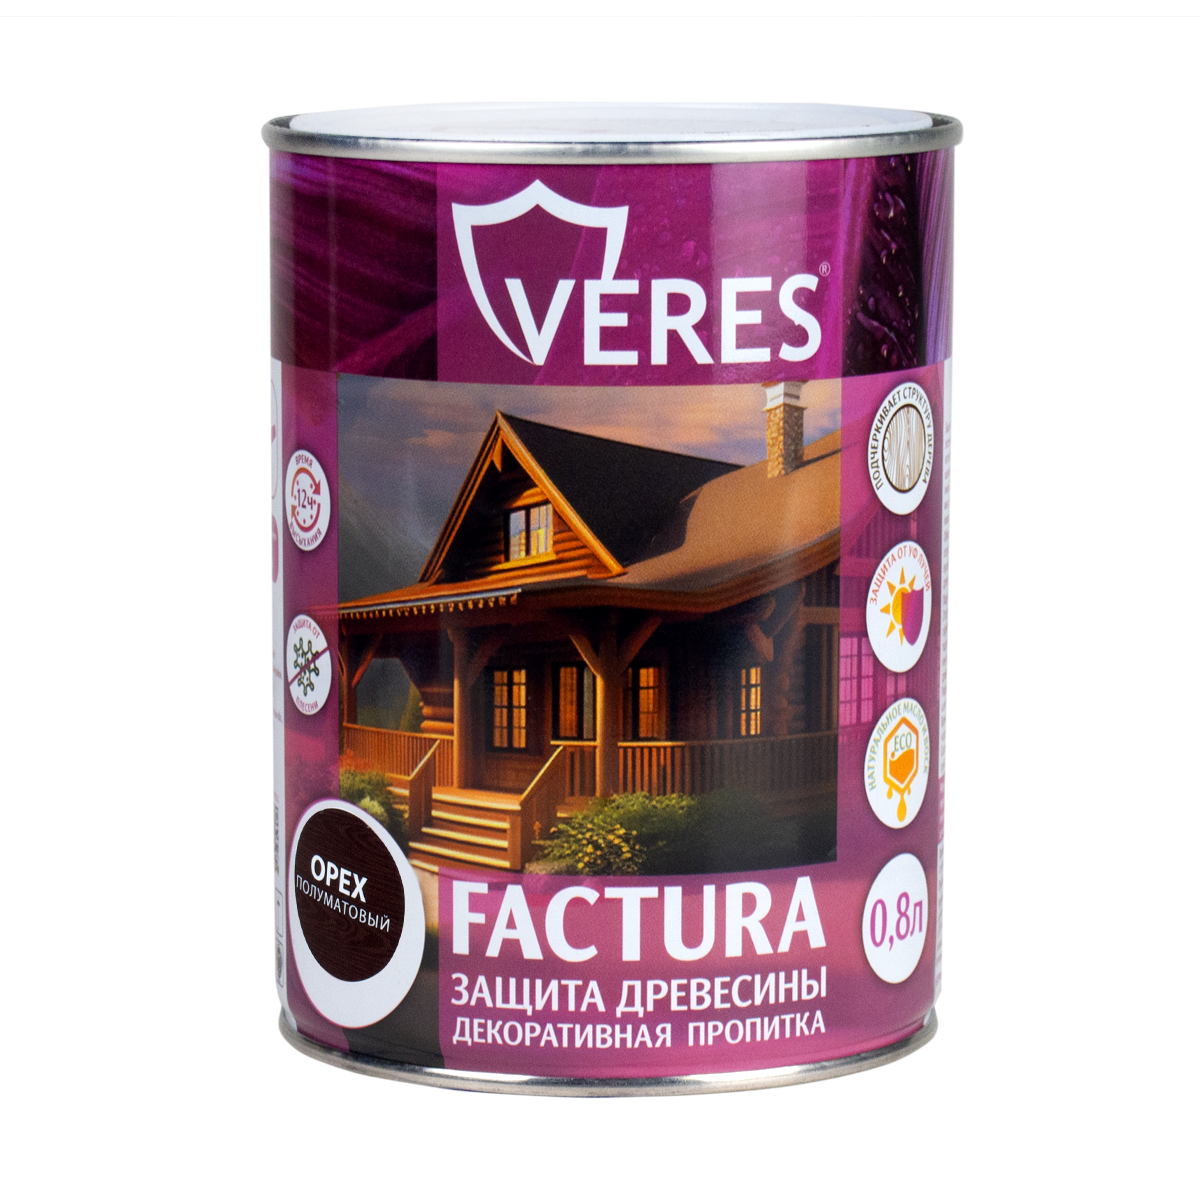 Декоративная пропитка для дерева Veres Factura полуматовая 0 8 л орех, VR-050